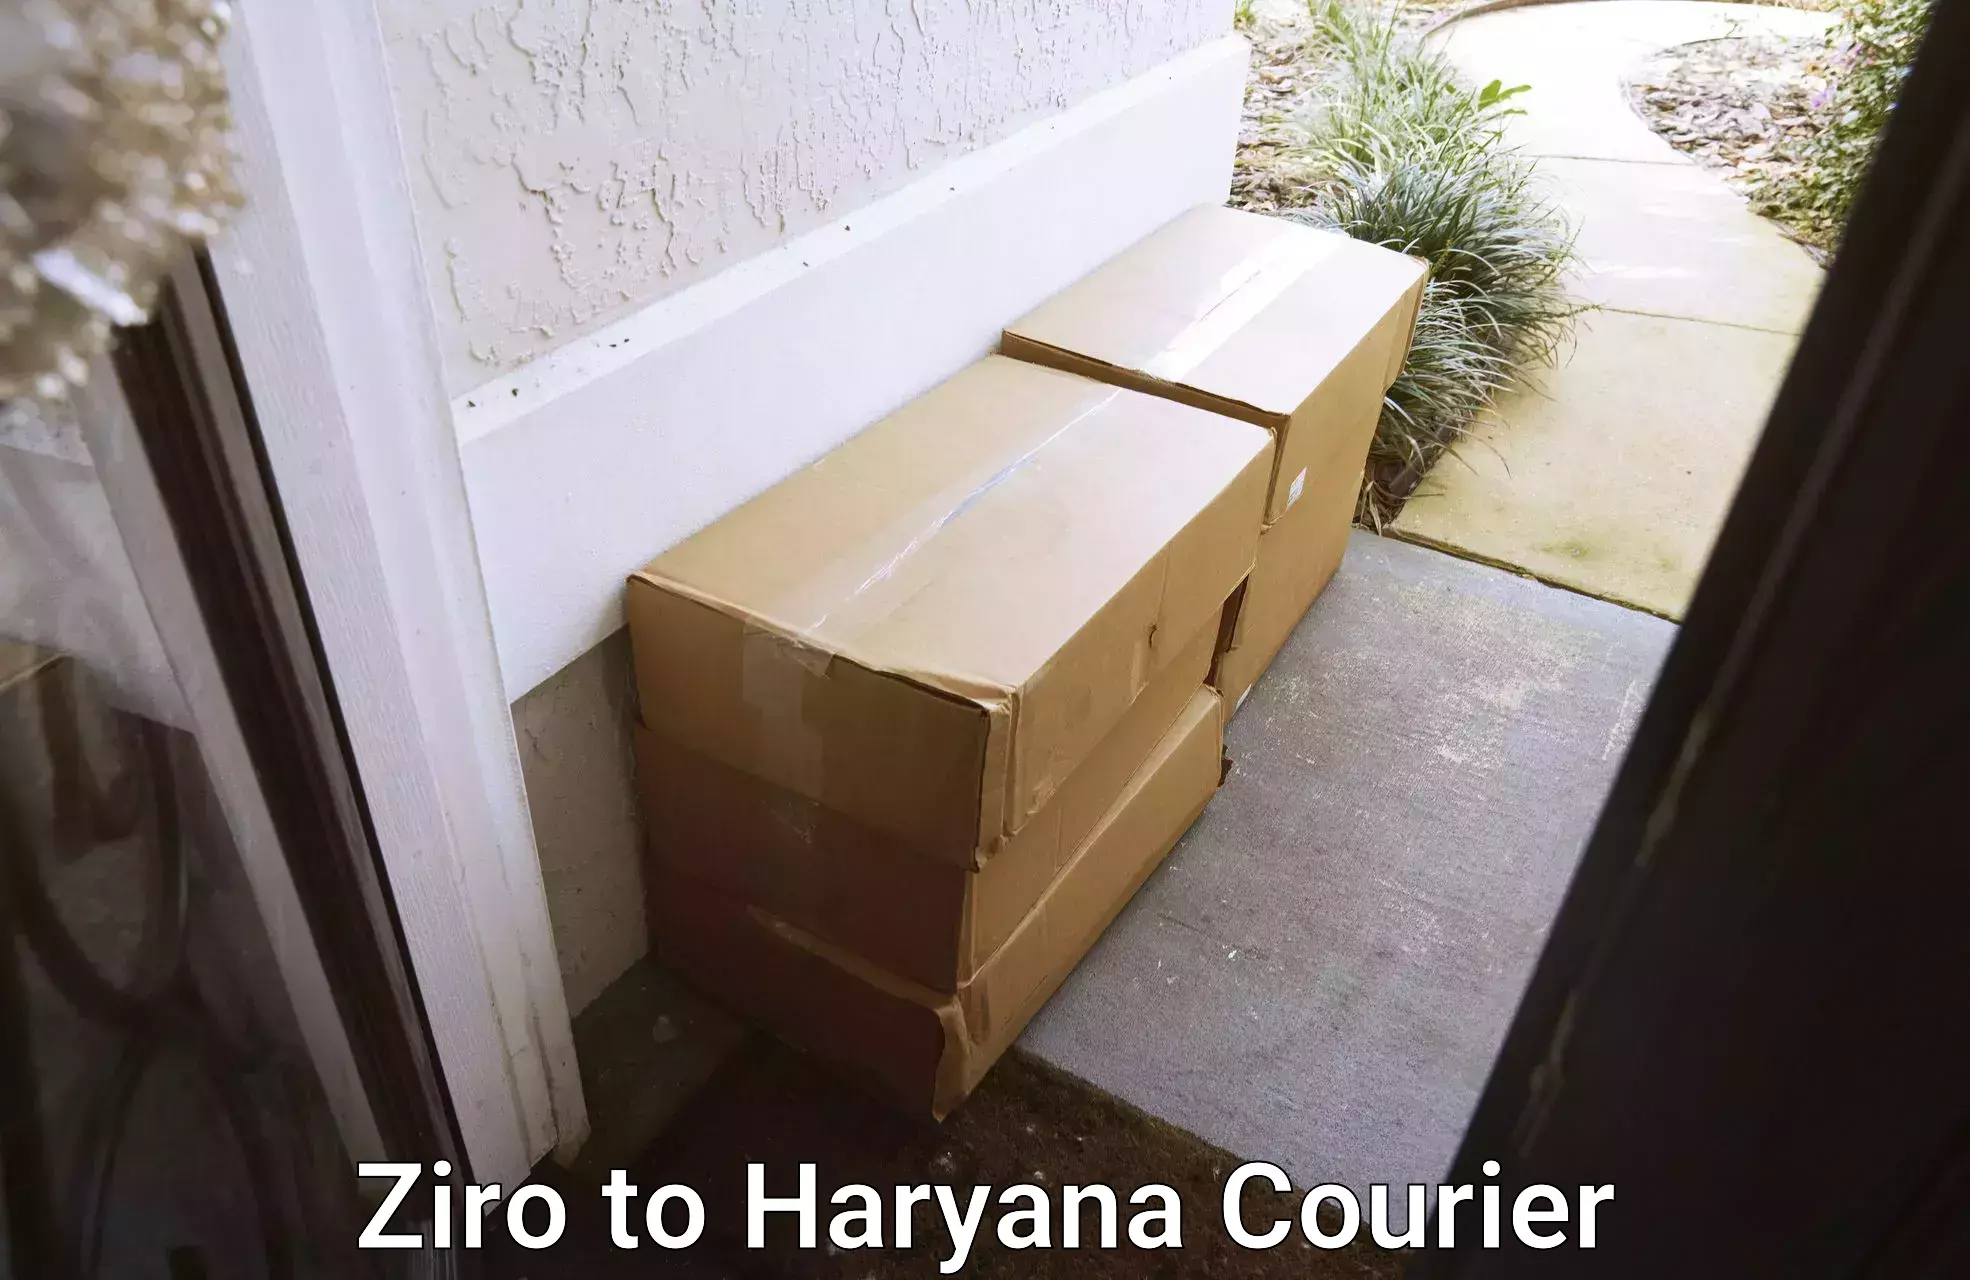 Premium courier services Ziro to Haryana